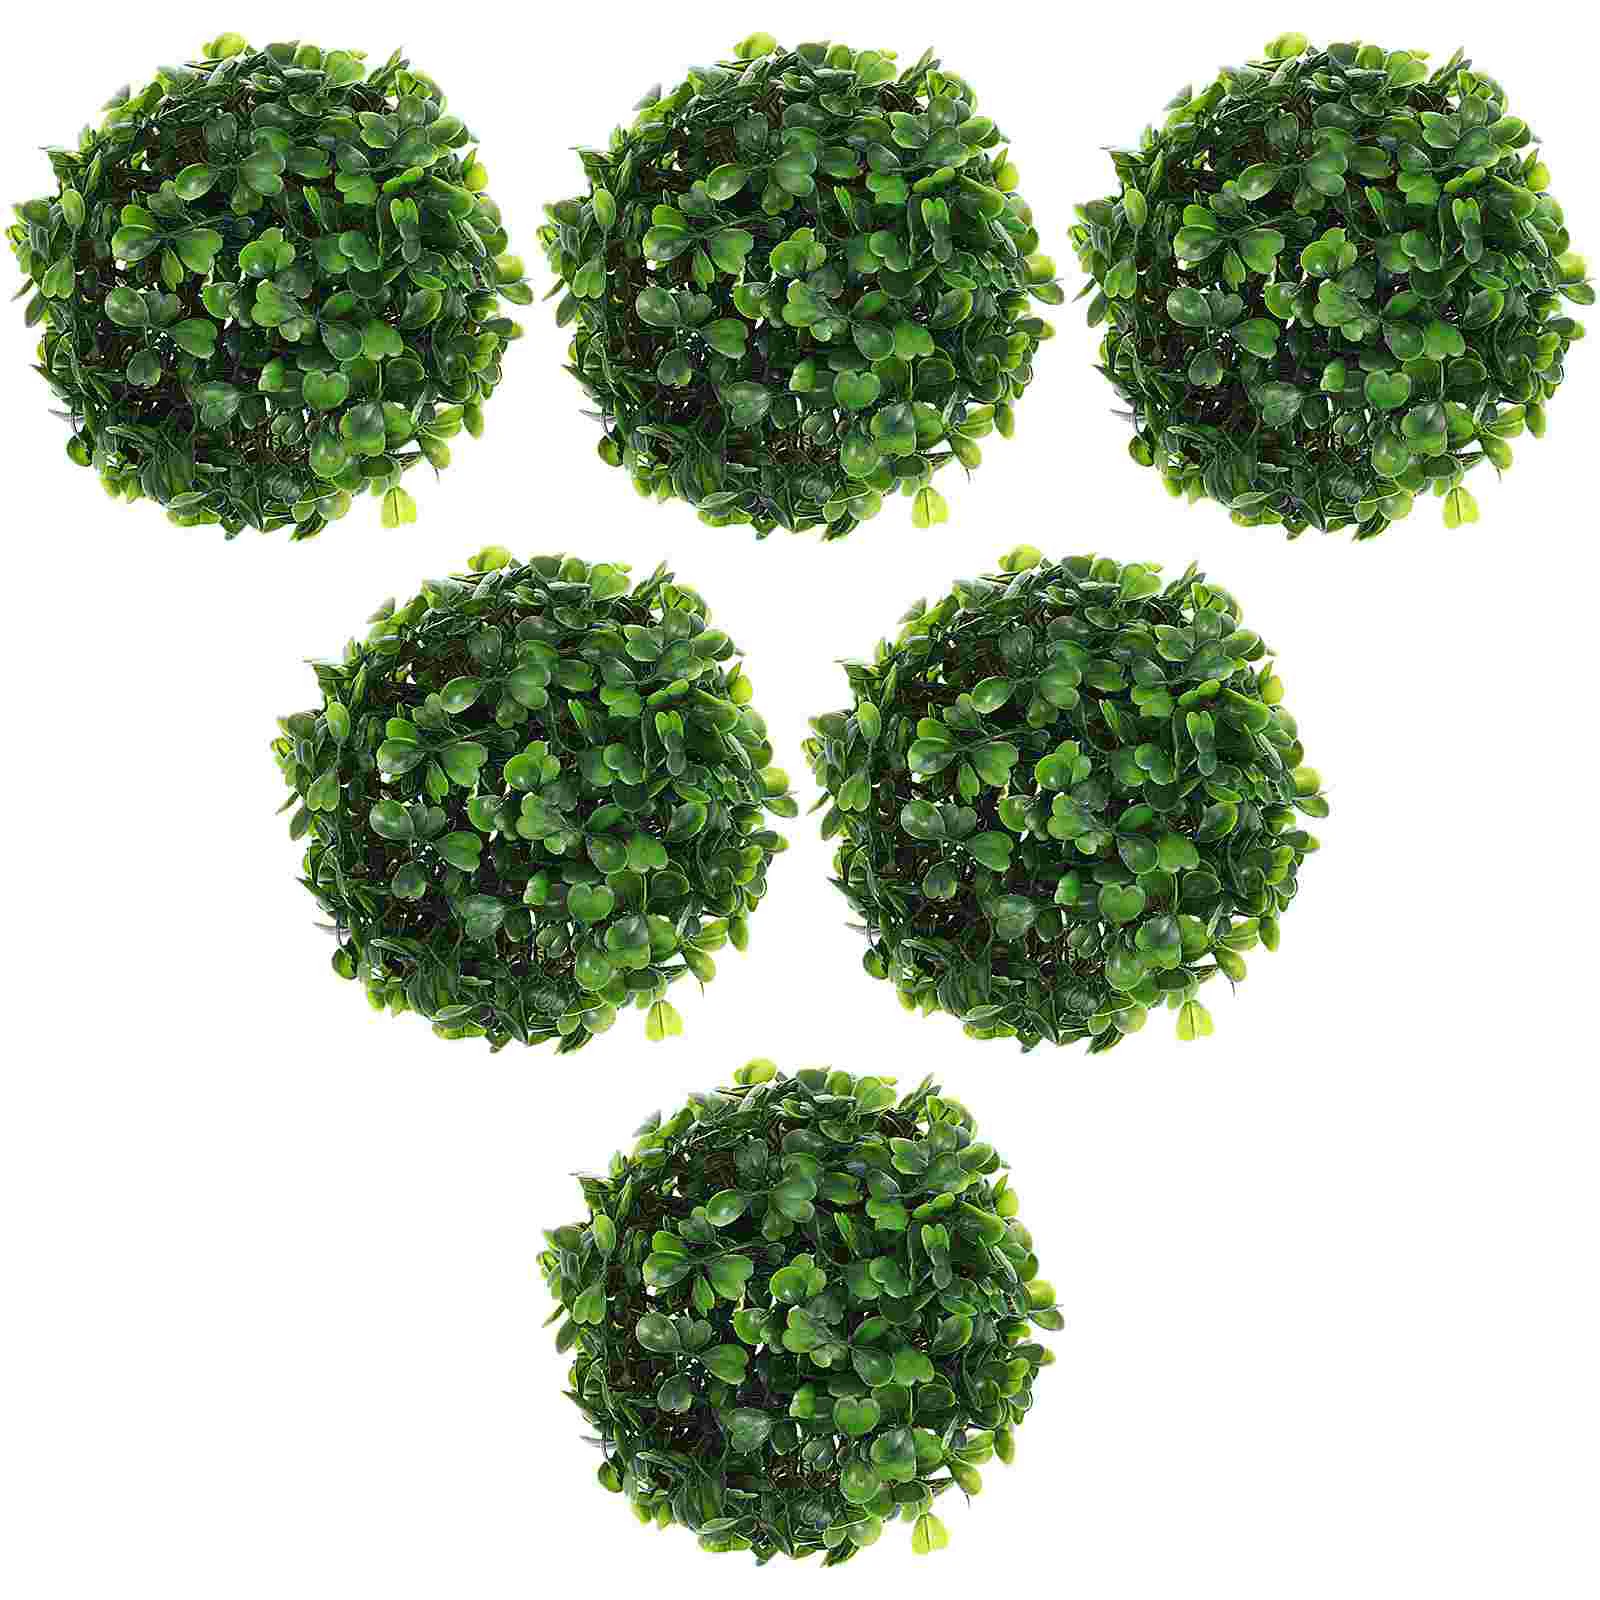 

6 Pcs Creative Grass Balls Decor Flower Garlands Green Plants Artificial Flowers Outdoors